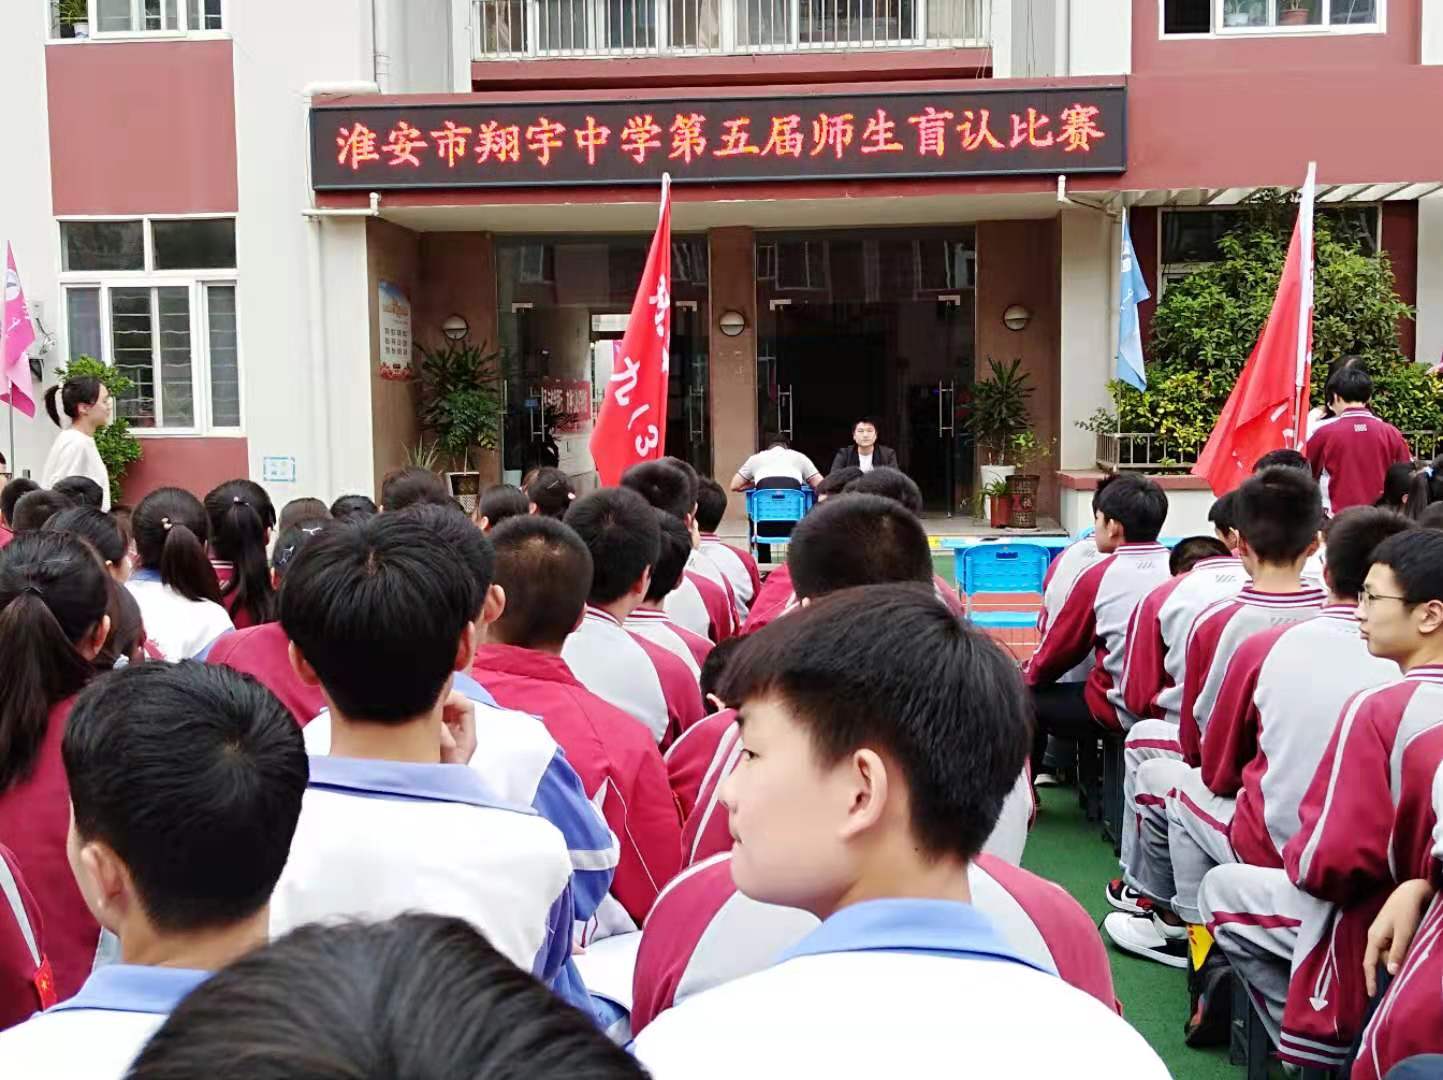 淮安市翔宇中学隆重举行第五届师生盲认比赛